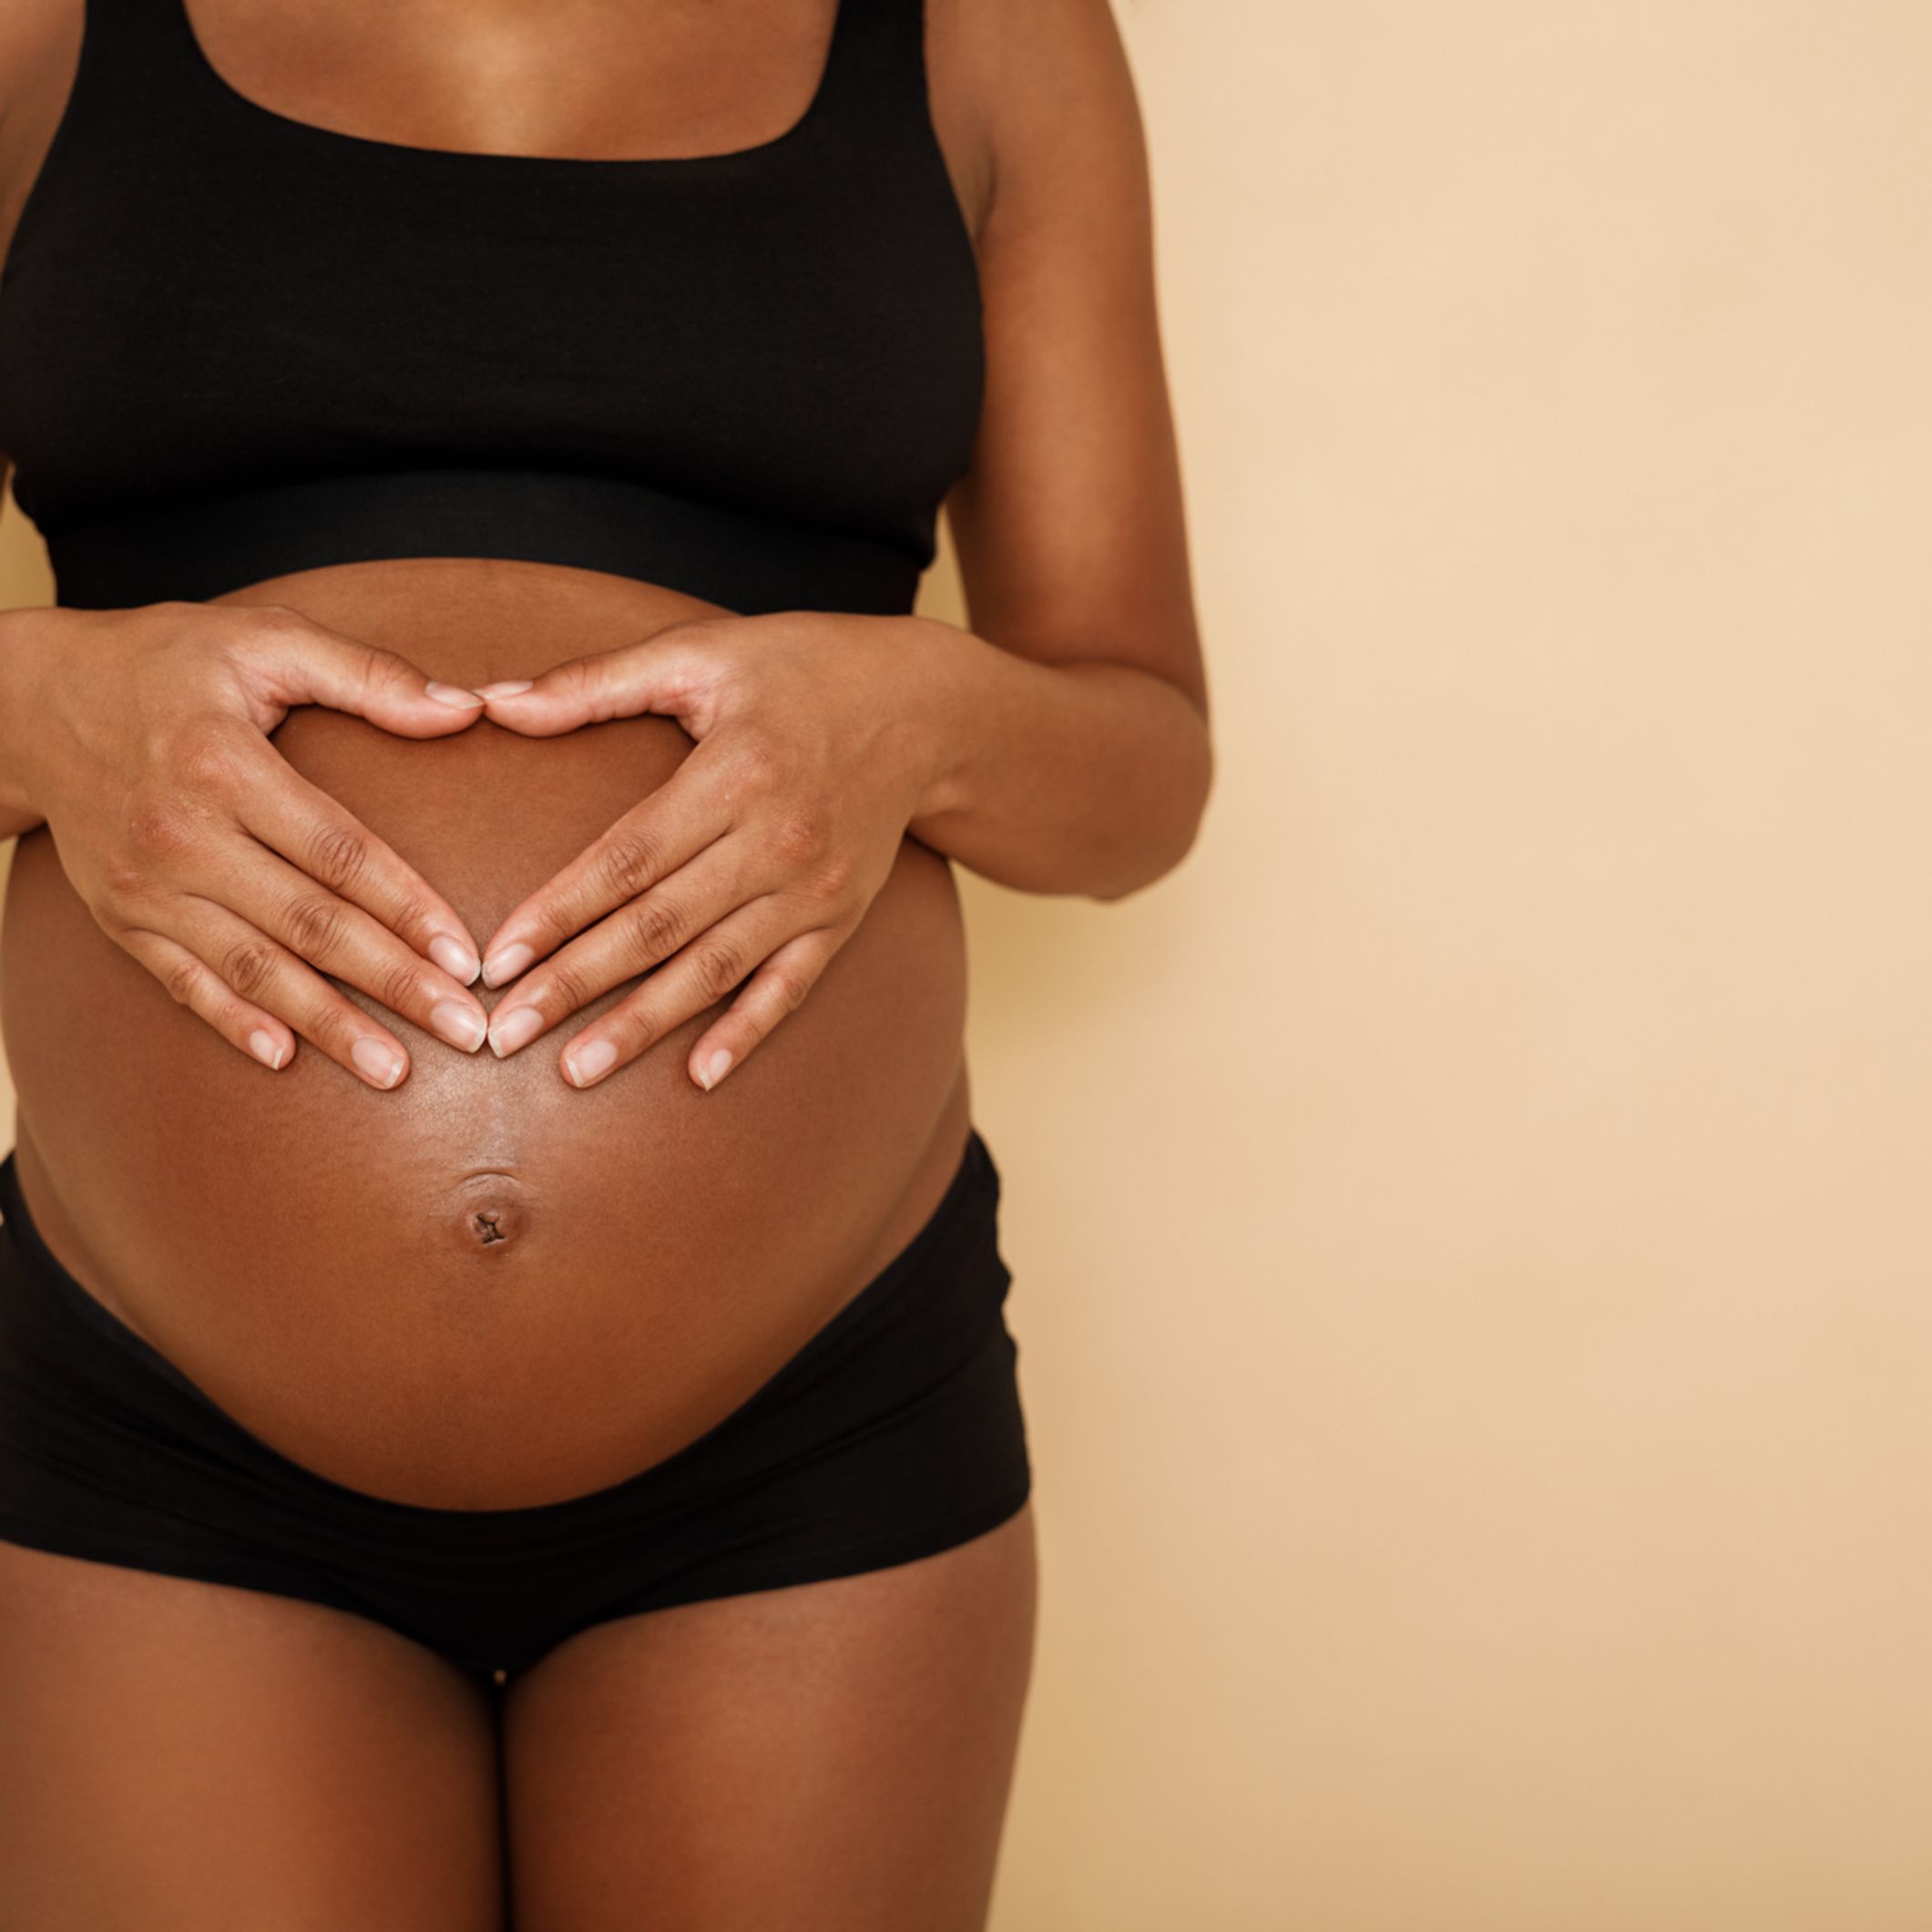 Comment évolue le ventre d'une femme enceinte au cours de la grossesse ?